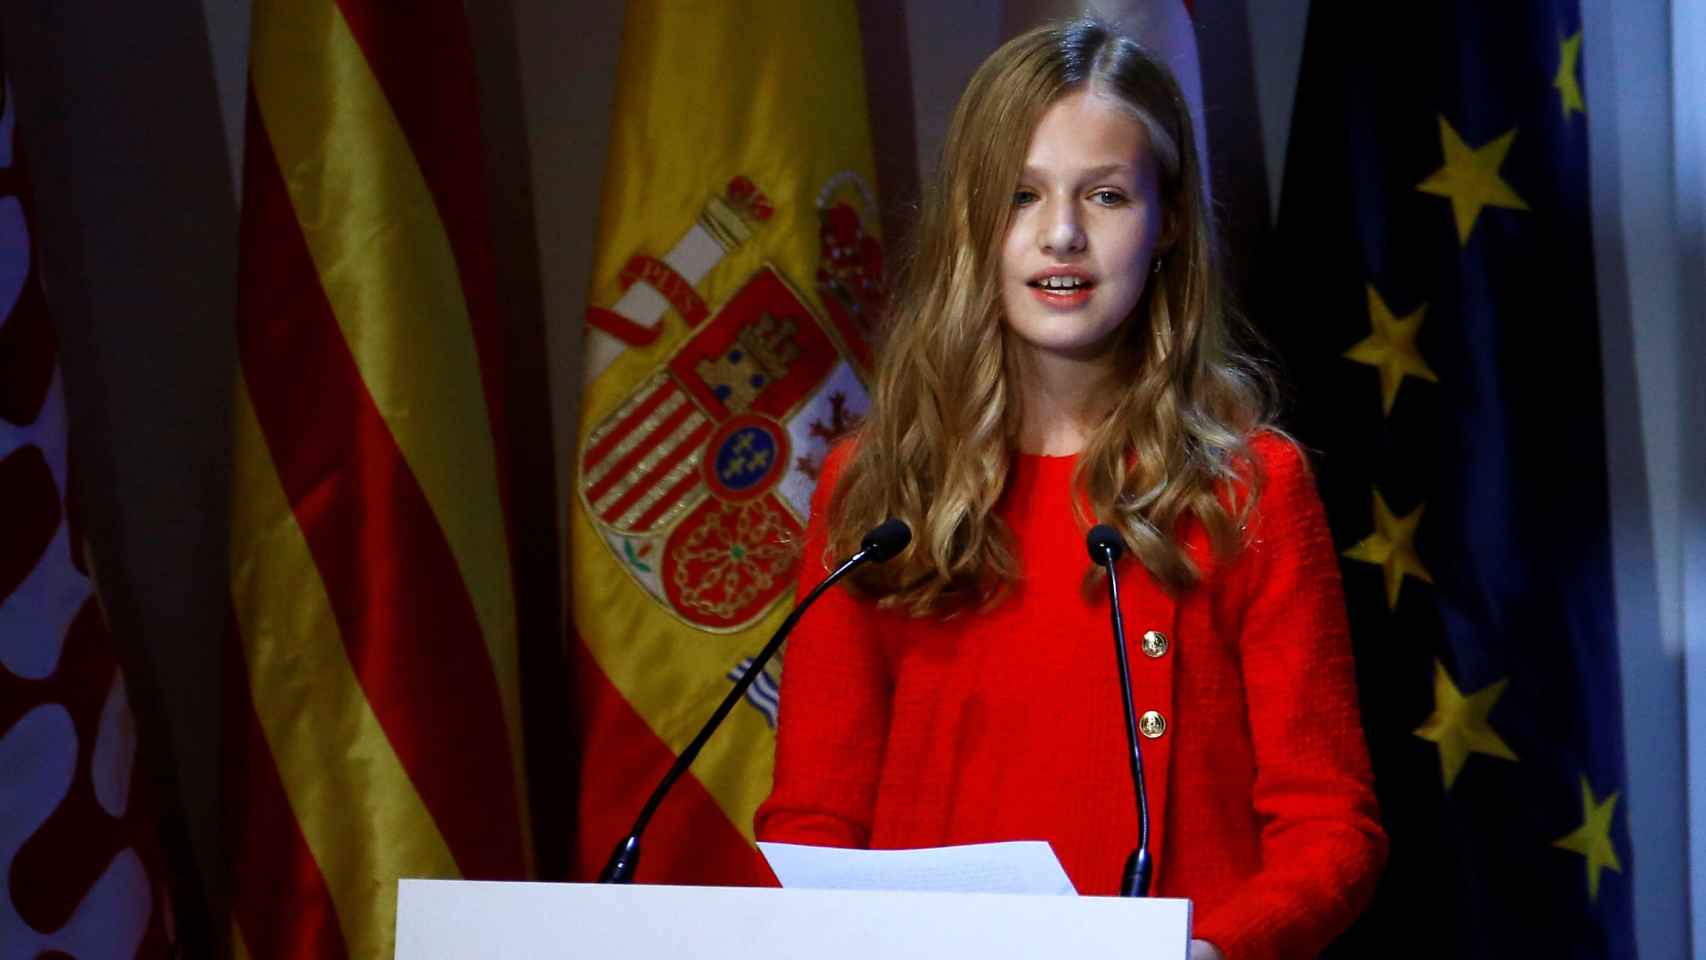 La princesa Leonor en los Premios Princesa de Girona.